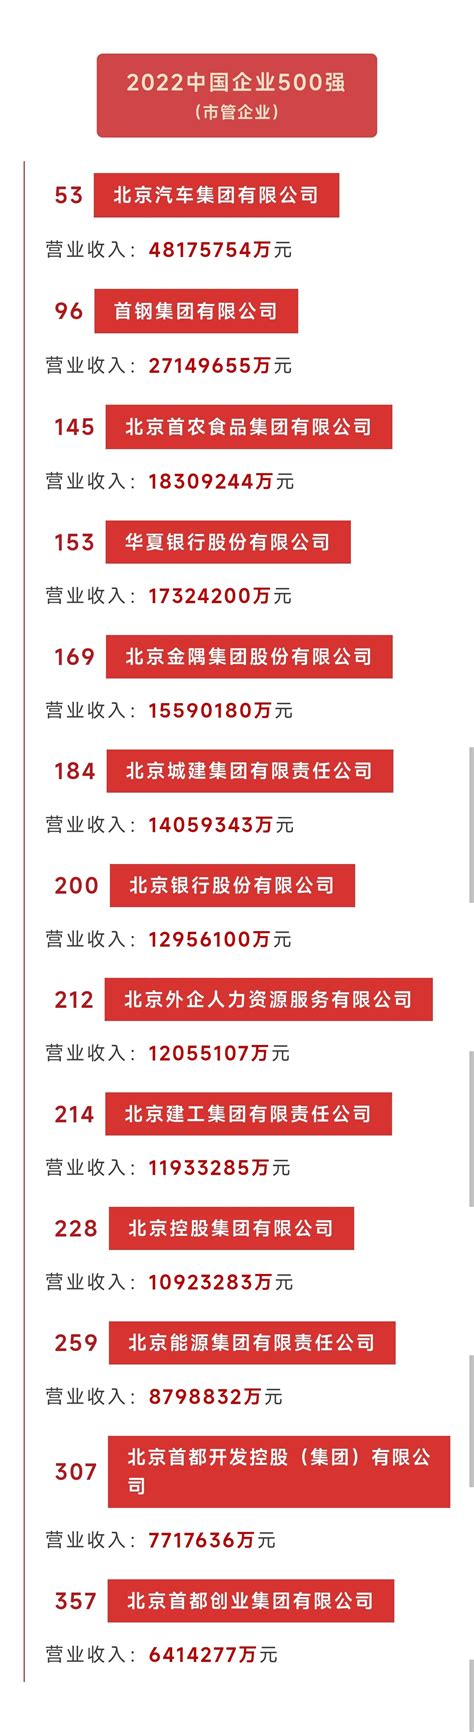 北京十大国有企业排名-北京能源集团有限责任公司上榜(服务业企业)-排行榜123网